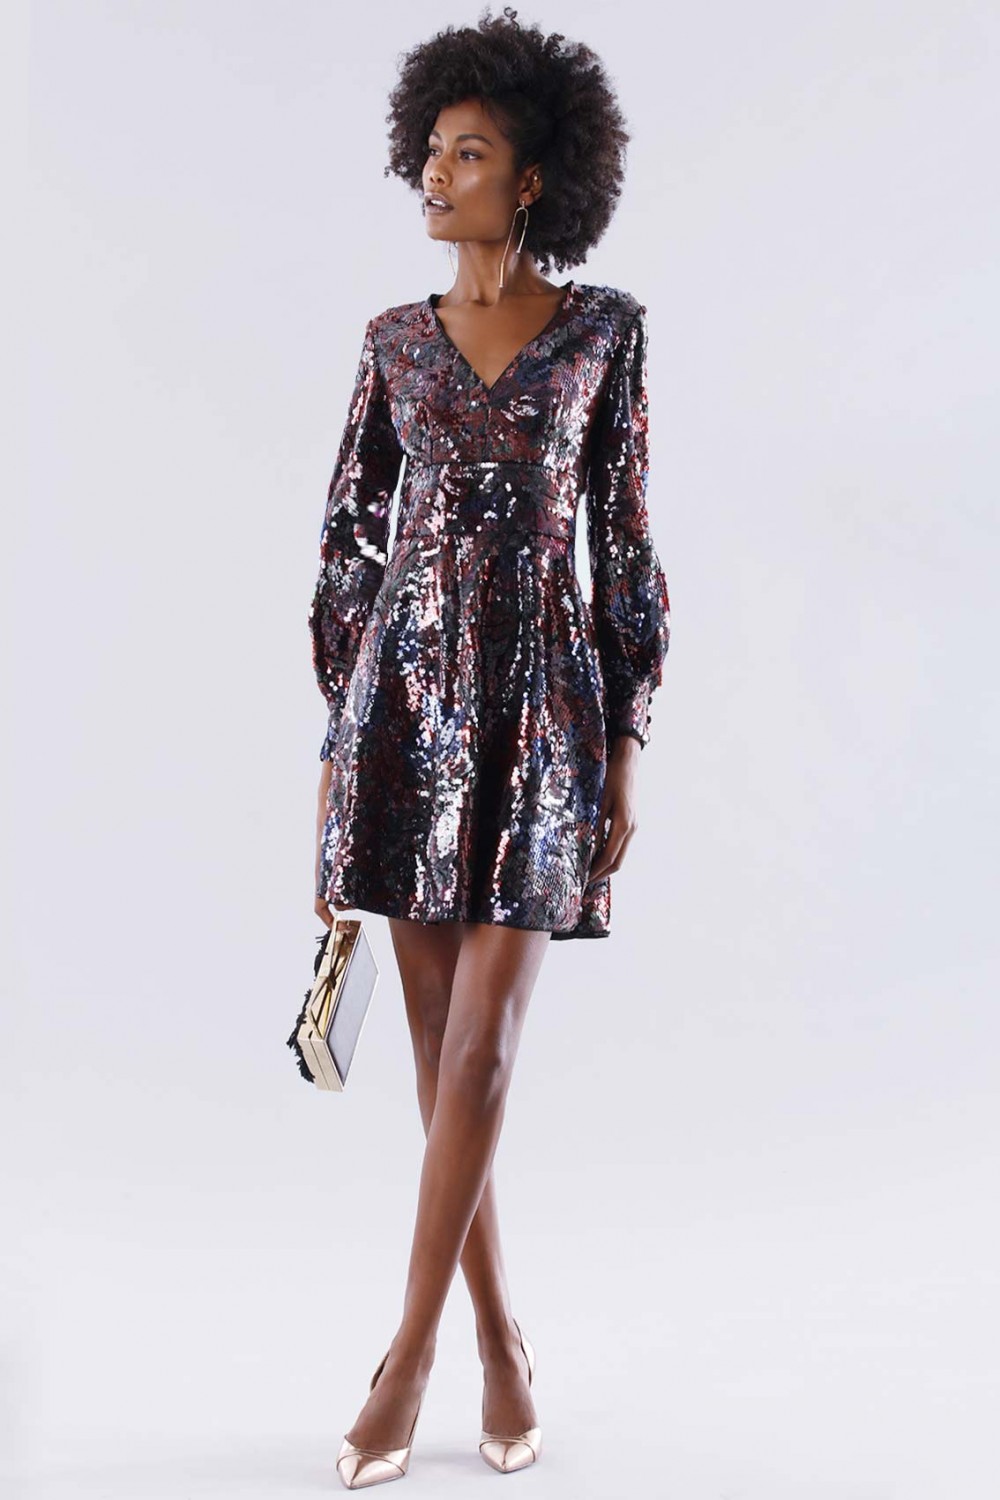 Noleggio Abbigliamento Firmato - Dress in multicolored sequins - Paule Ka - Drexcode -1